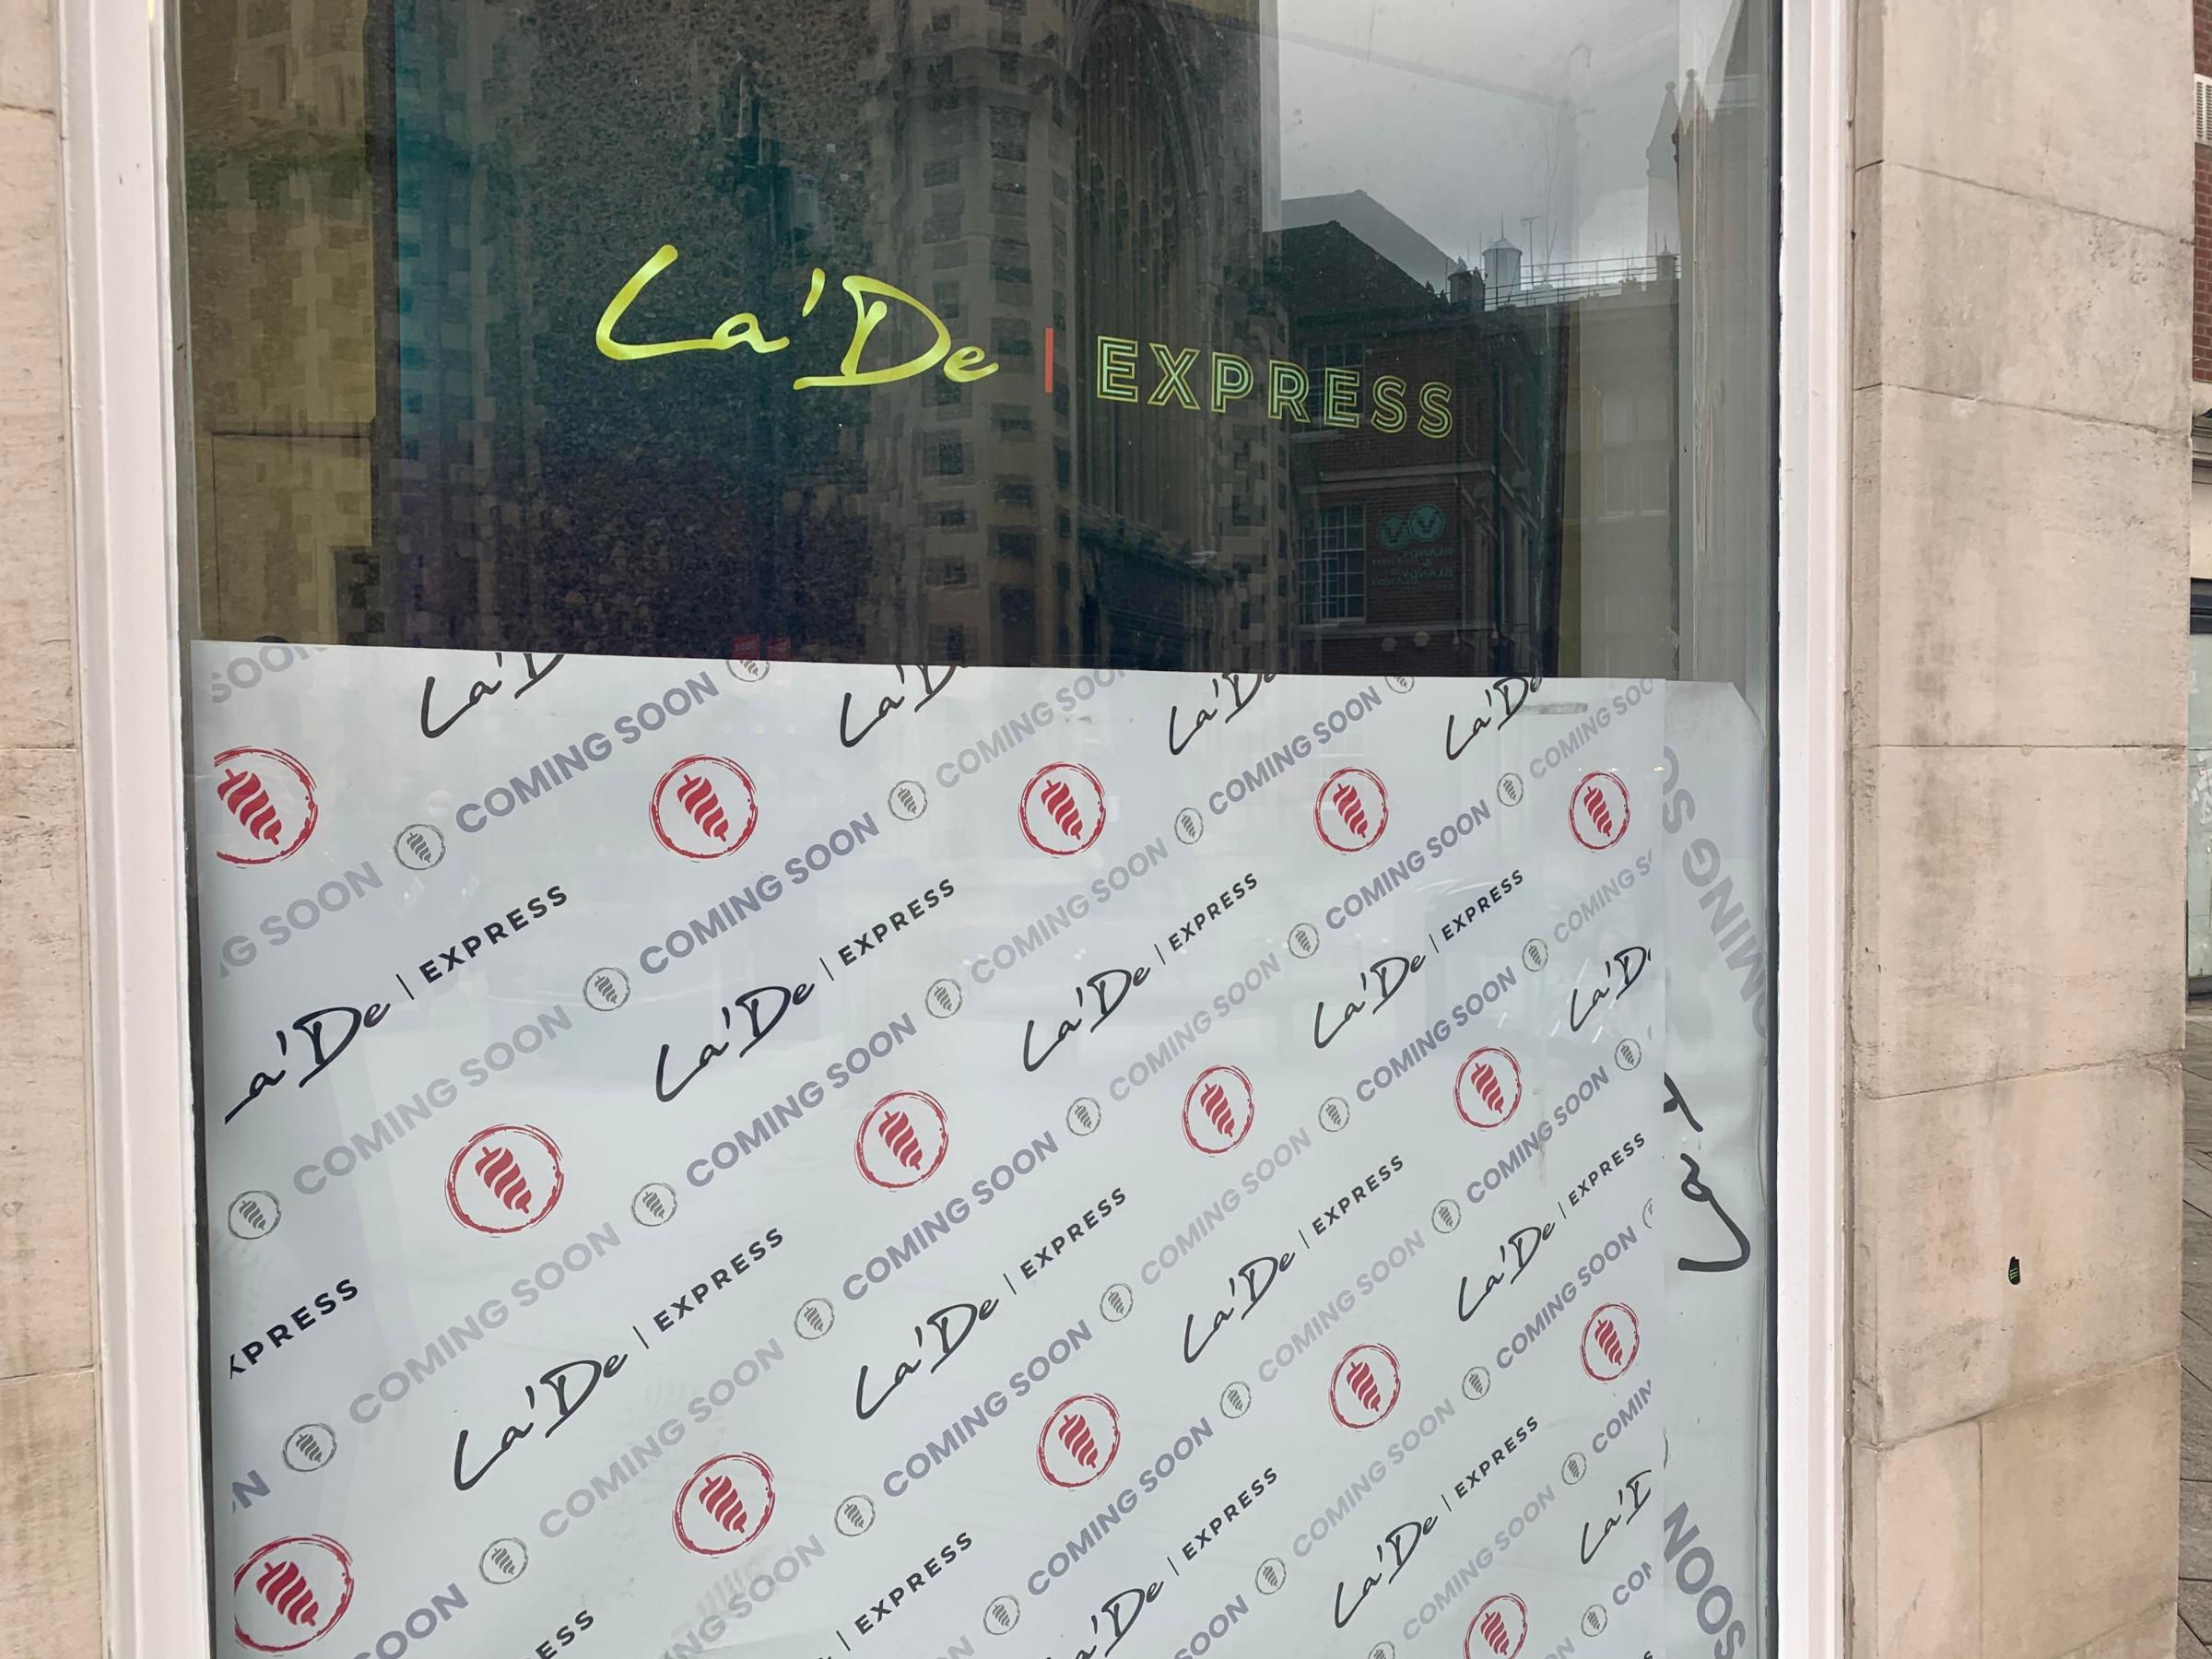 La De Express look set to open in Market Place